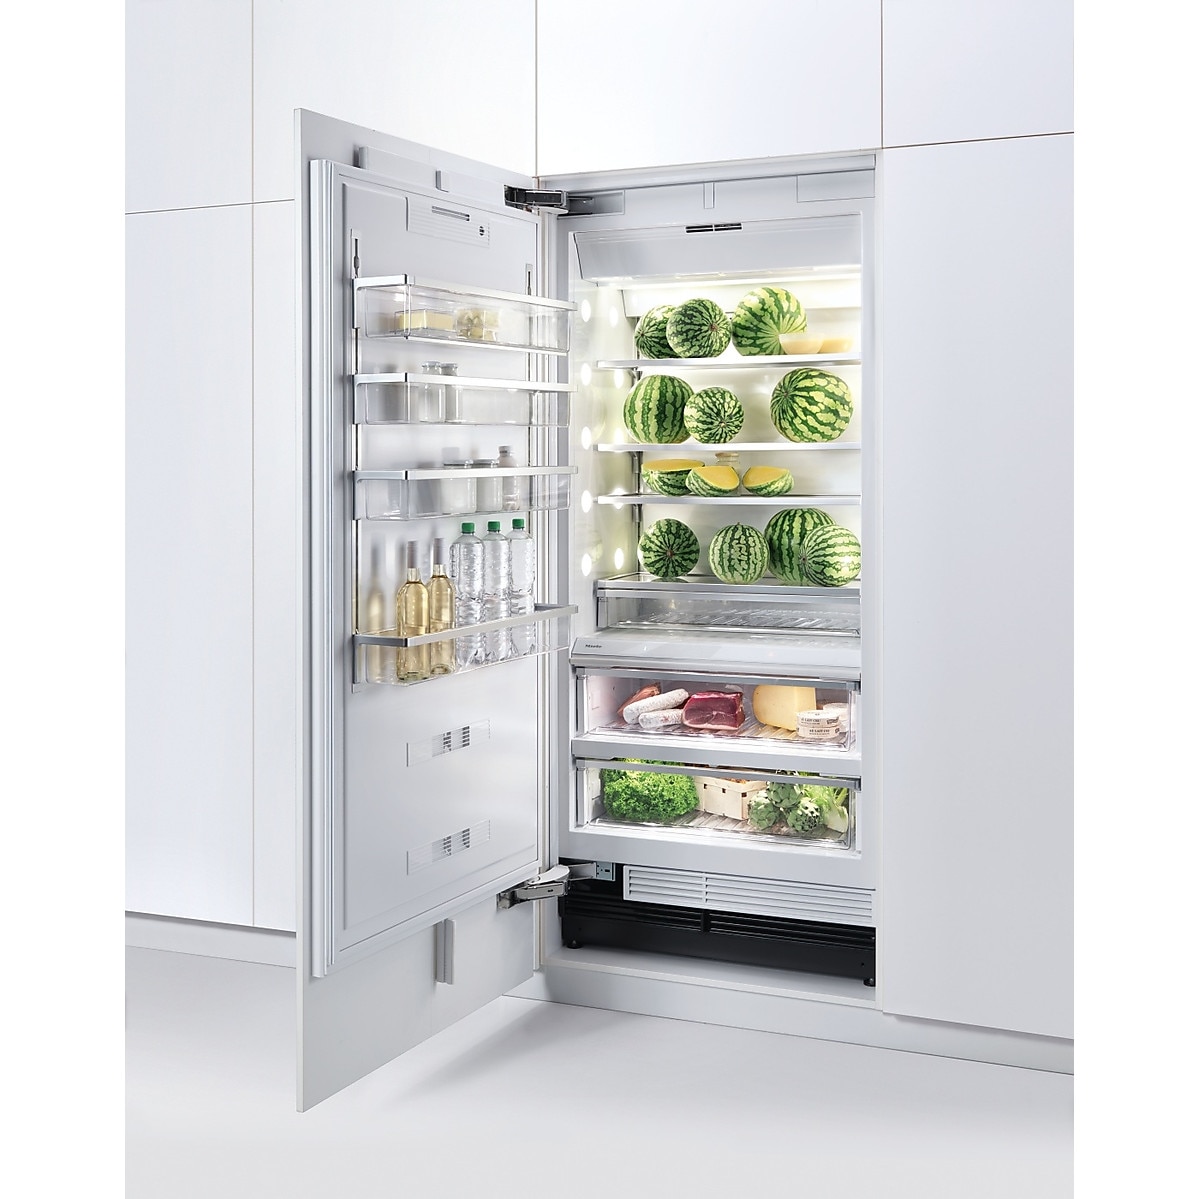 Холодильник встраиваемый двухкамерный no frost. Холодильник k1901 vi. Холодильник Miele k 2901 vi. Встраиваемый холодильник Miele. Холодильник Miele-k2801vi11.